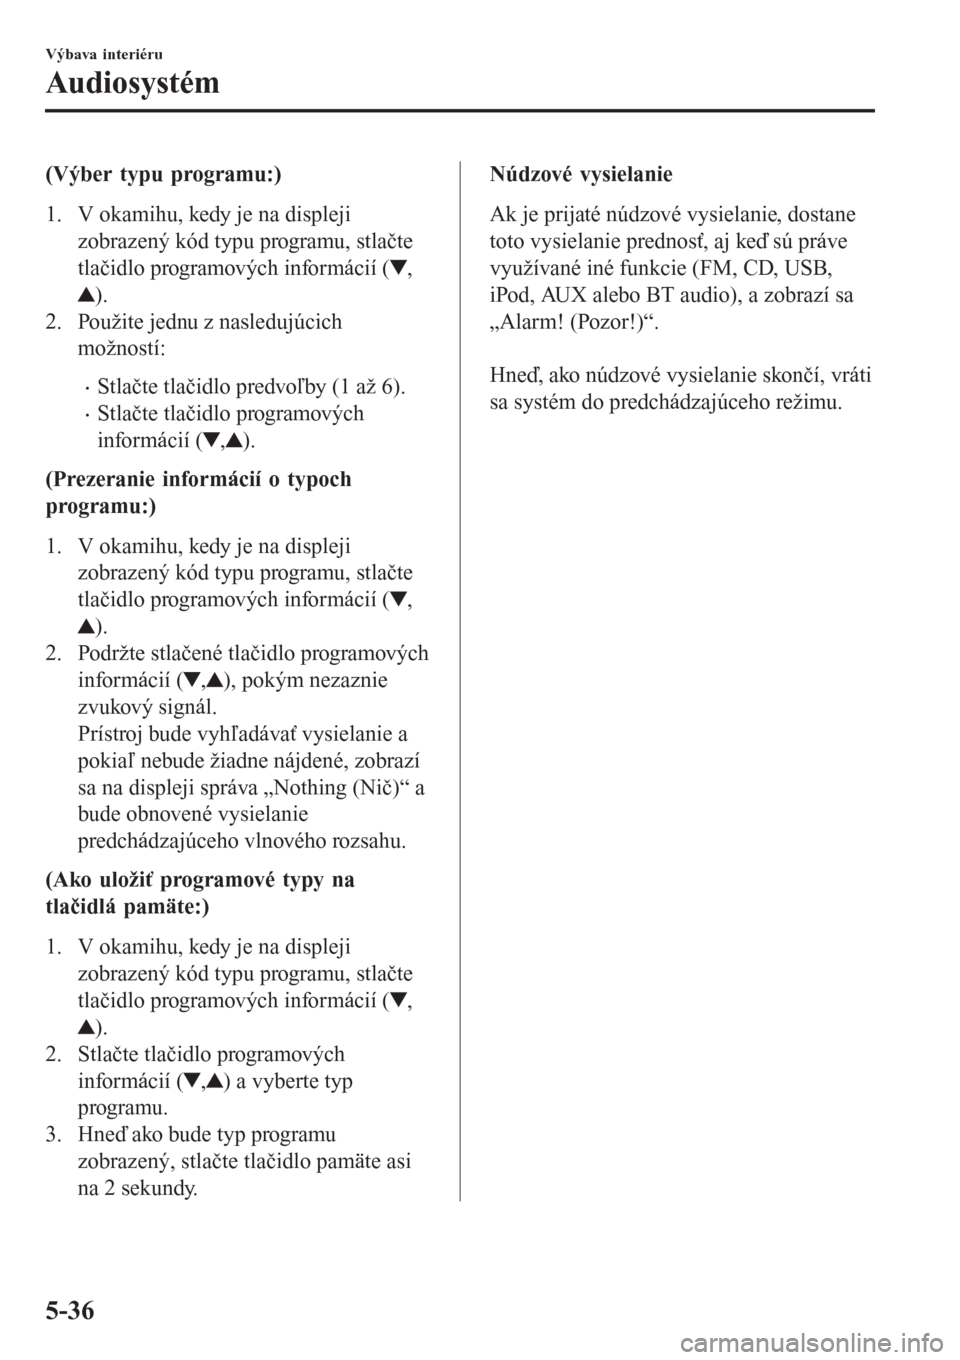 MAZDA MODEL CX-3 2015  Užívateľská príručka (in Slovak) (Výber typu programu:)
1. V okamihu, kedy je na displeji
zobrazený kód typu programu, stlačte
tlačidlo programových informácií (
,
).
2. Použite jednu z nasledujúcich
možností:
•Stlačte